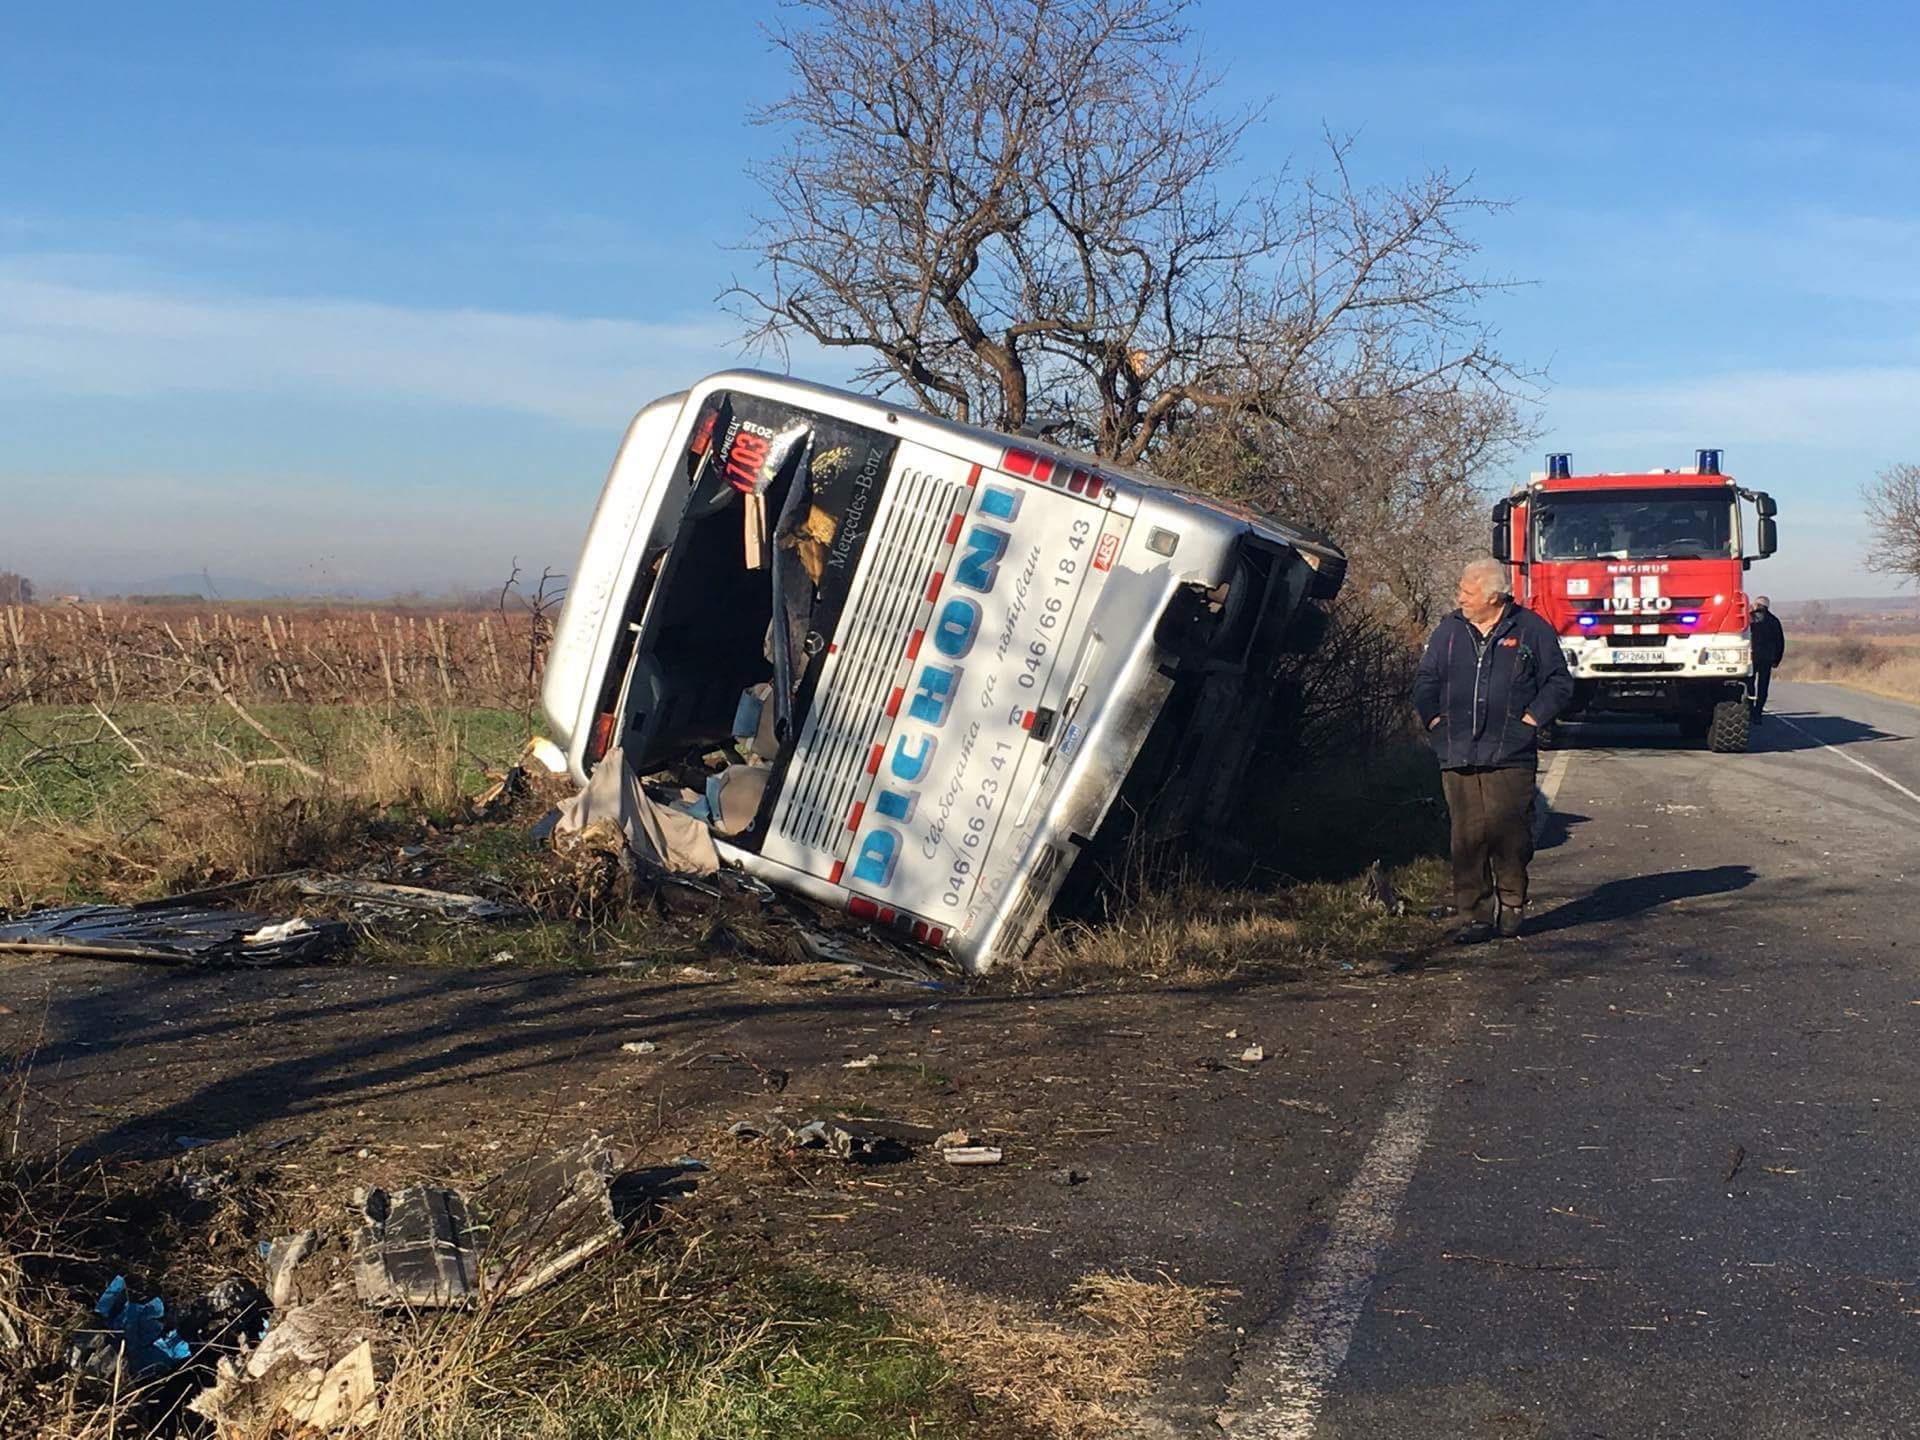 Двама души загинаха, след като автобус с работници се удари в дърво на пътя между селата Сокол и Еленово. Още петима са откарани в болница в Нова Загора.